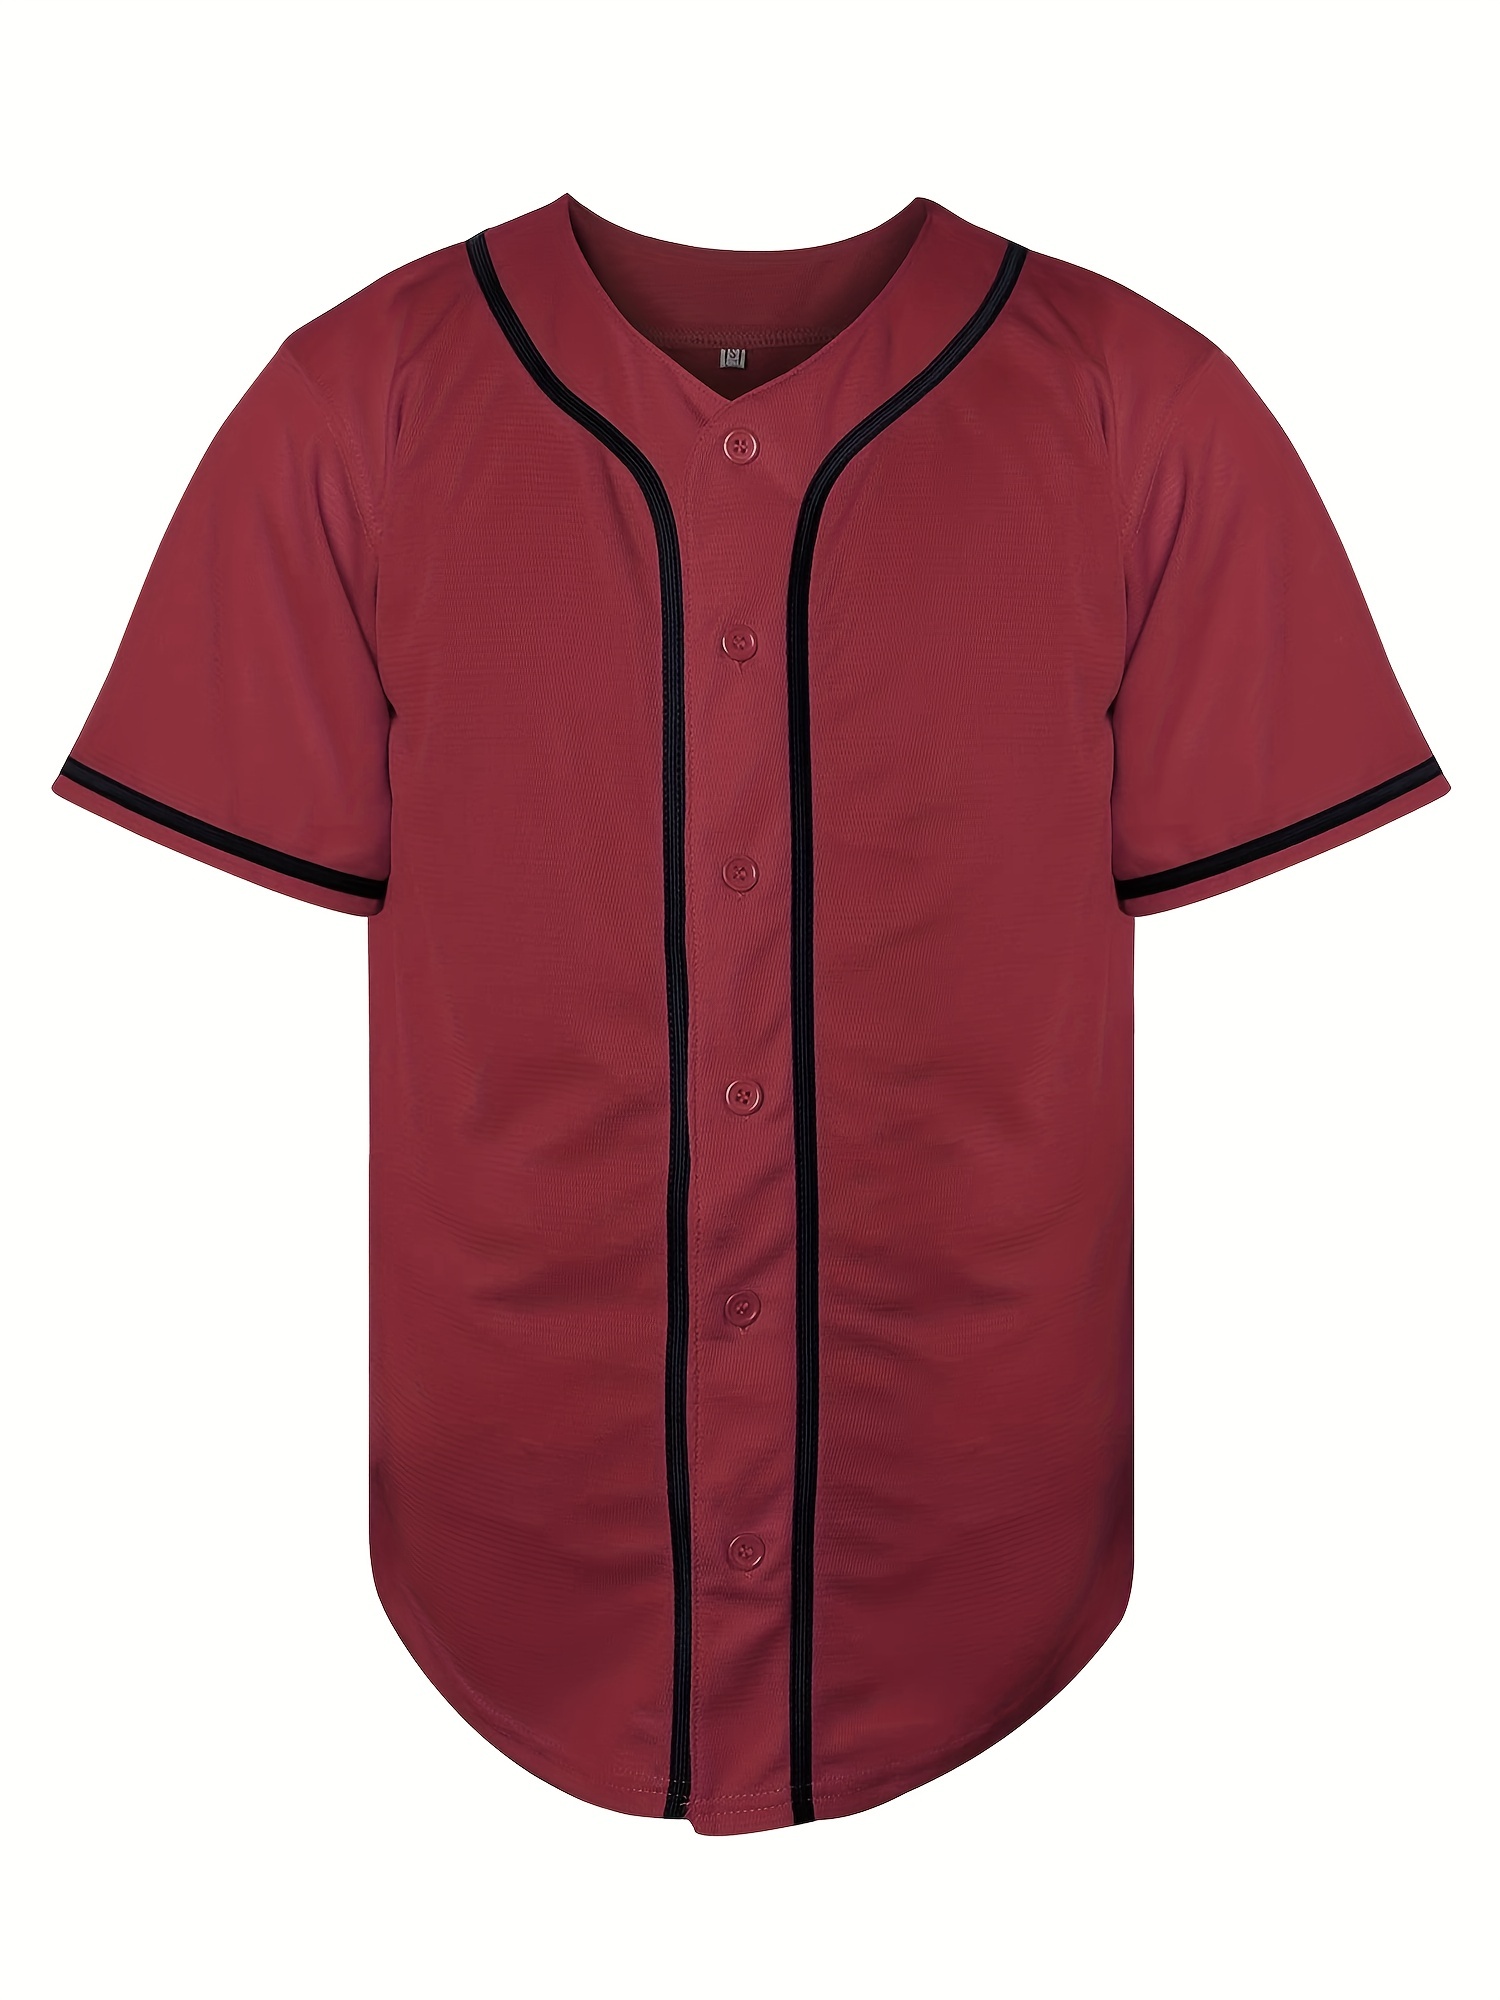 Camiseta De Béisbol Bordada San Diego #23 Para Hombre, Camisa De Manga  Corta Transpirable Ligeramente Elástica De Diseño Clásico Para Competición  De E